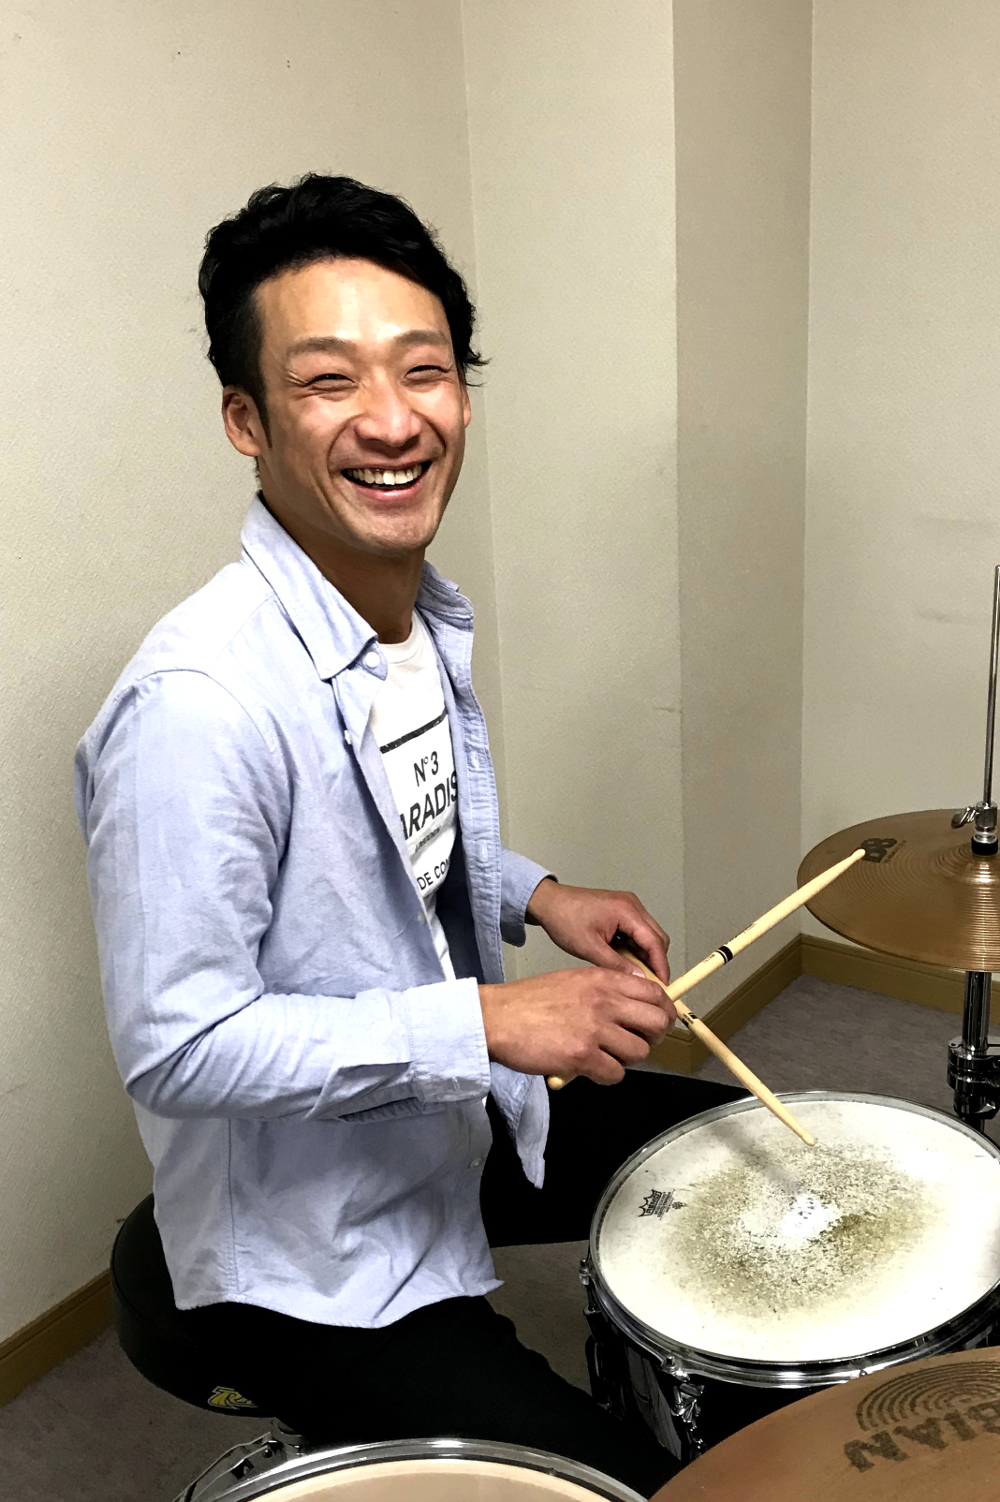 大人ドラム教室 カワカミ先生 新潟の音楽教室 あぽろんミュージックスクール